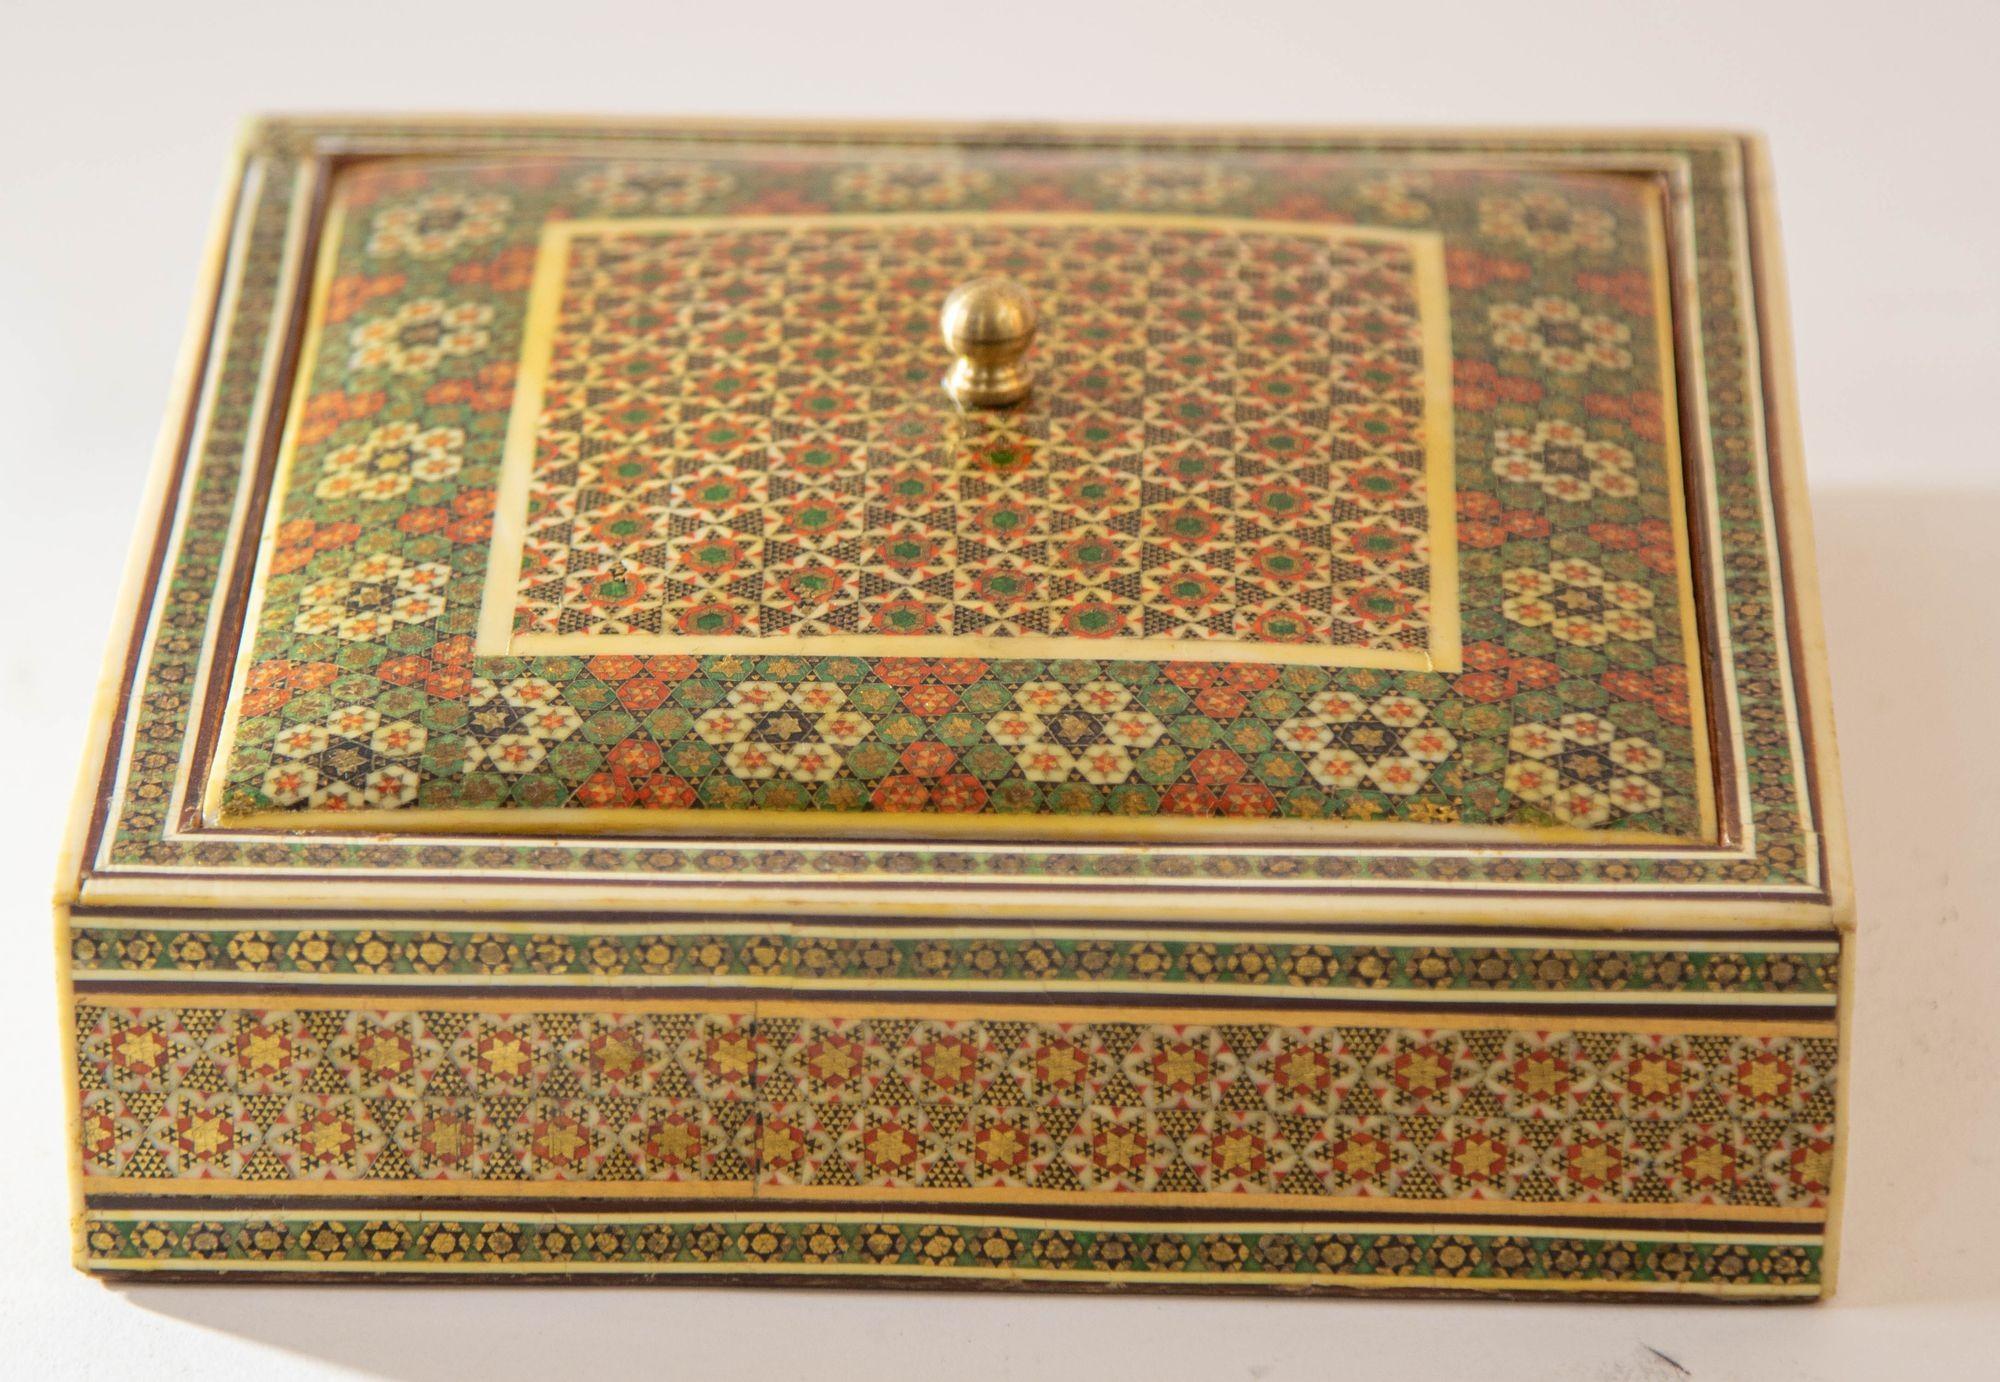 1950er Jahre Anglo Indian Micro Sadeli Mosaic Inlaid Schmuck-Box.
ABMESSUNGEN: 7ʺB × 7ʺD × 2,5ʺH.
Indo-Persisches Schmuckkästchen im maurischen Stil mit Mikro-Mosaik-Intarsien und Deckel.
Aufwendig eingelegte anglo-indische Dose mit floralem und